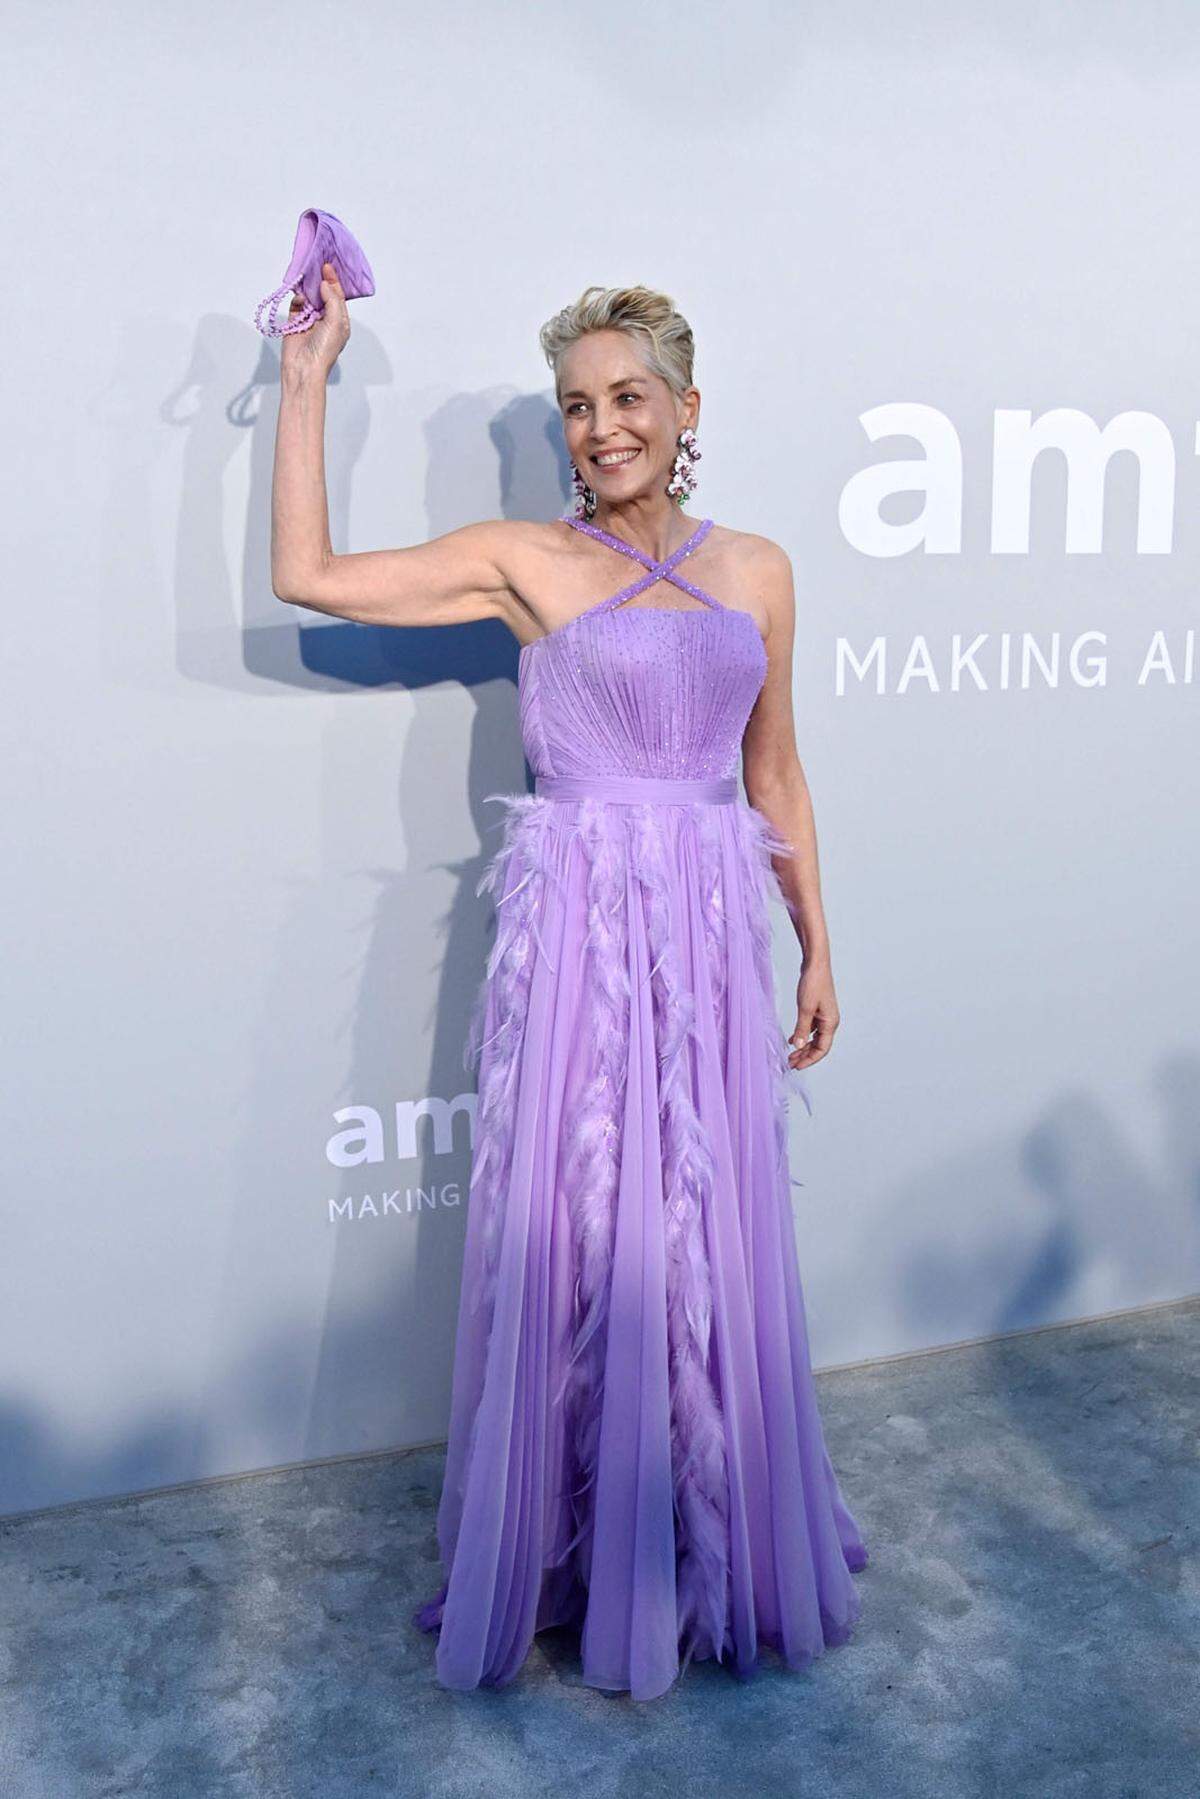 Glamouröse Looks sind bei den Filmfestspielen in Cannes mindestens ebenso wichtig wie die vorgestellten Filme. Auch bei der Charity amfAR-Gala, die diesmal von Sharon Stone - sie trug ein Kleid von Alberta Ferretti - ausgerichtet wurde, standen die Looks der Stars im Mittelpunkt.